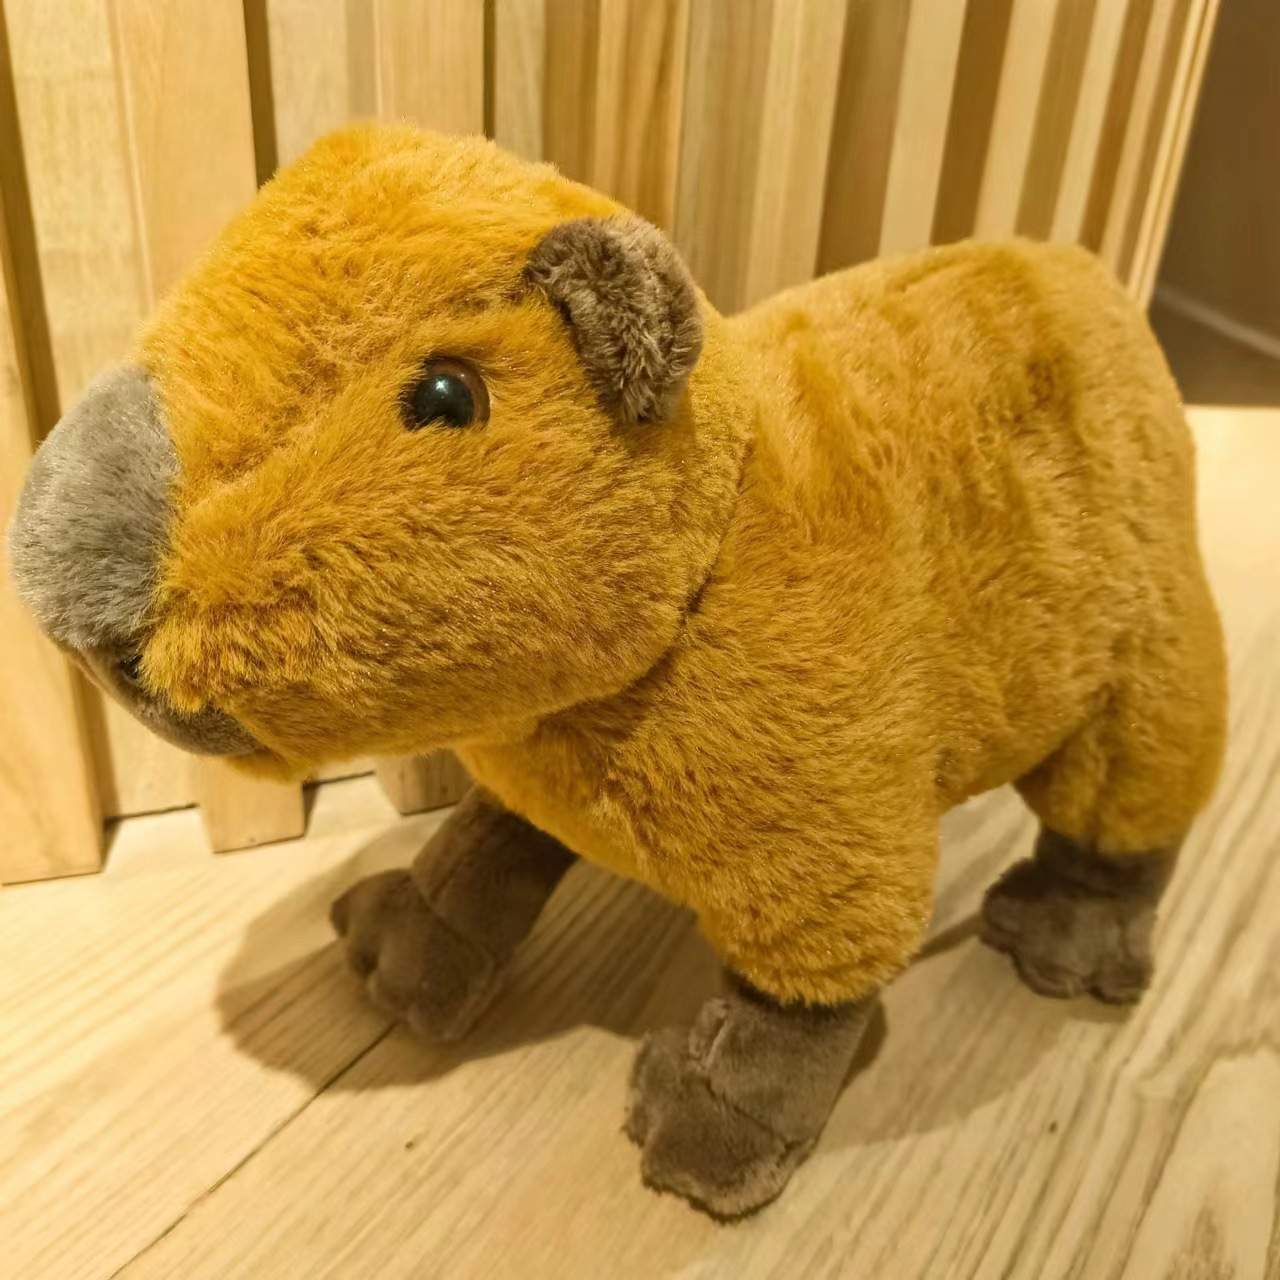 Kaufen Sie Capybara Animal Pompom Geburtstagskarte zu Großhandelspreisen